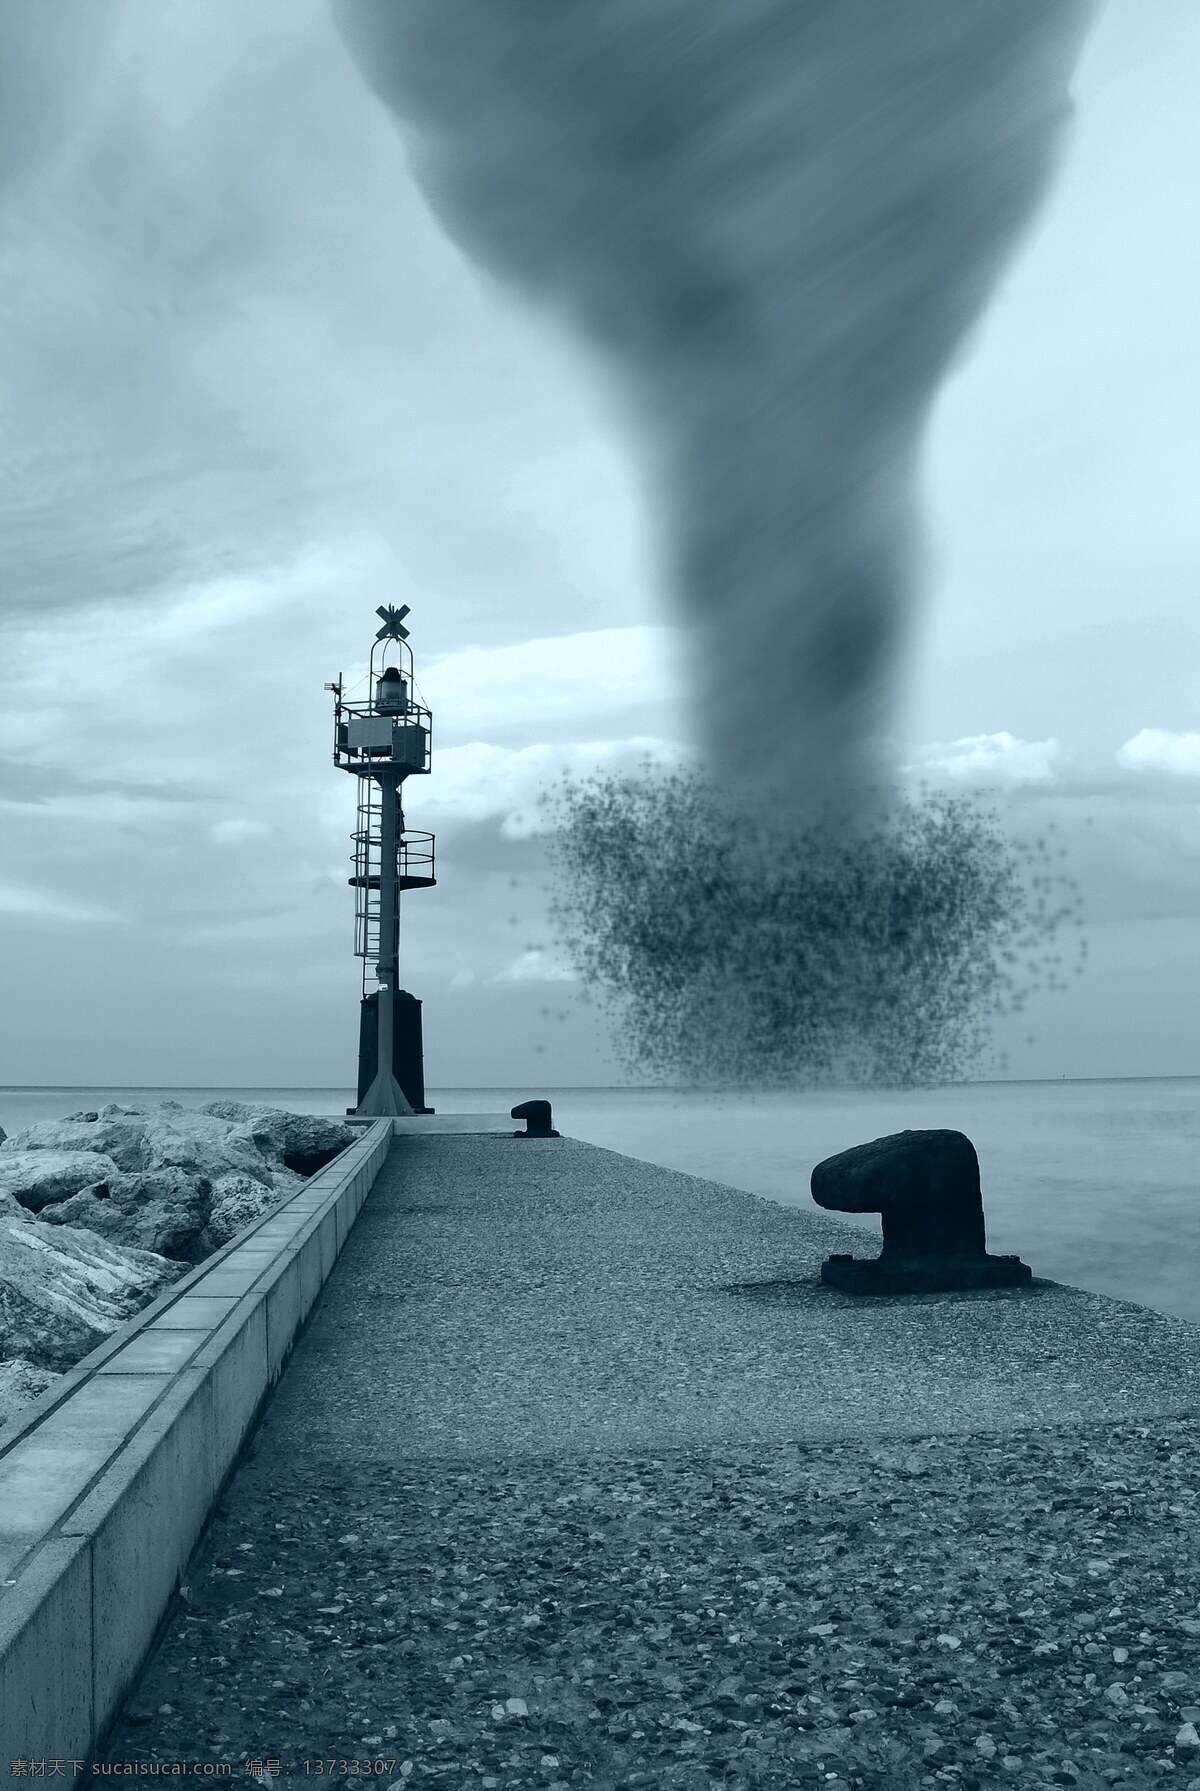 席卷 海面 龙卷风 灯塔 自然现象 自然灾害 灾难 其他风光 风景图片